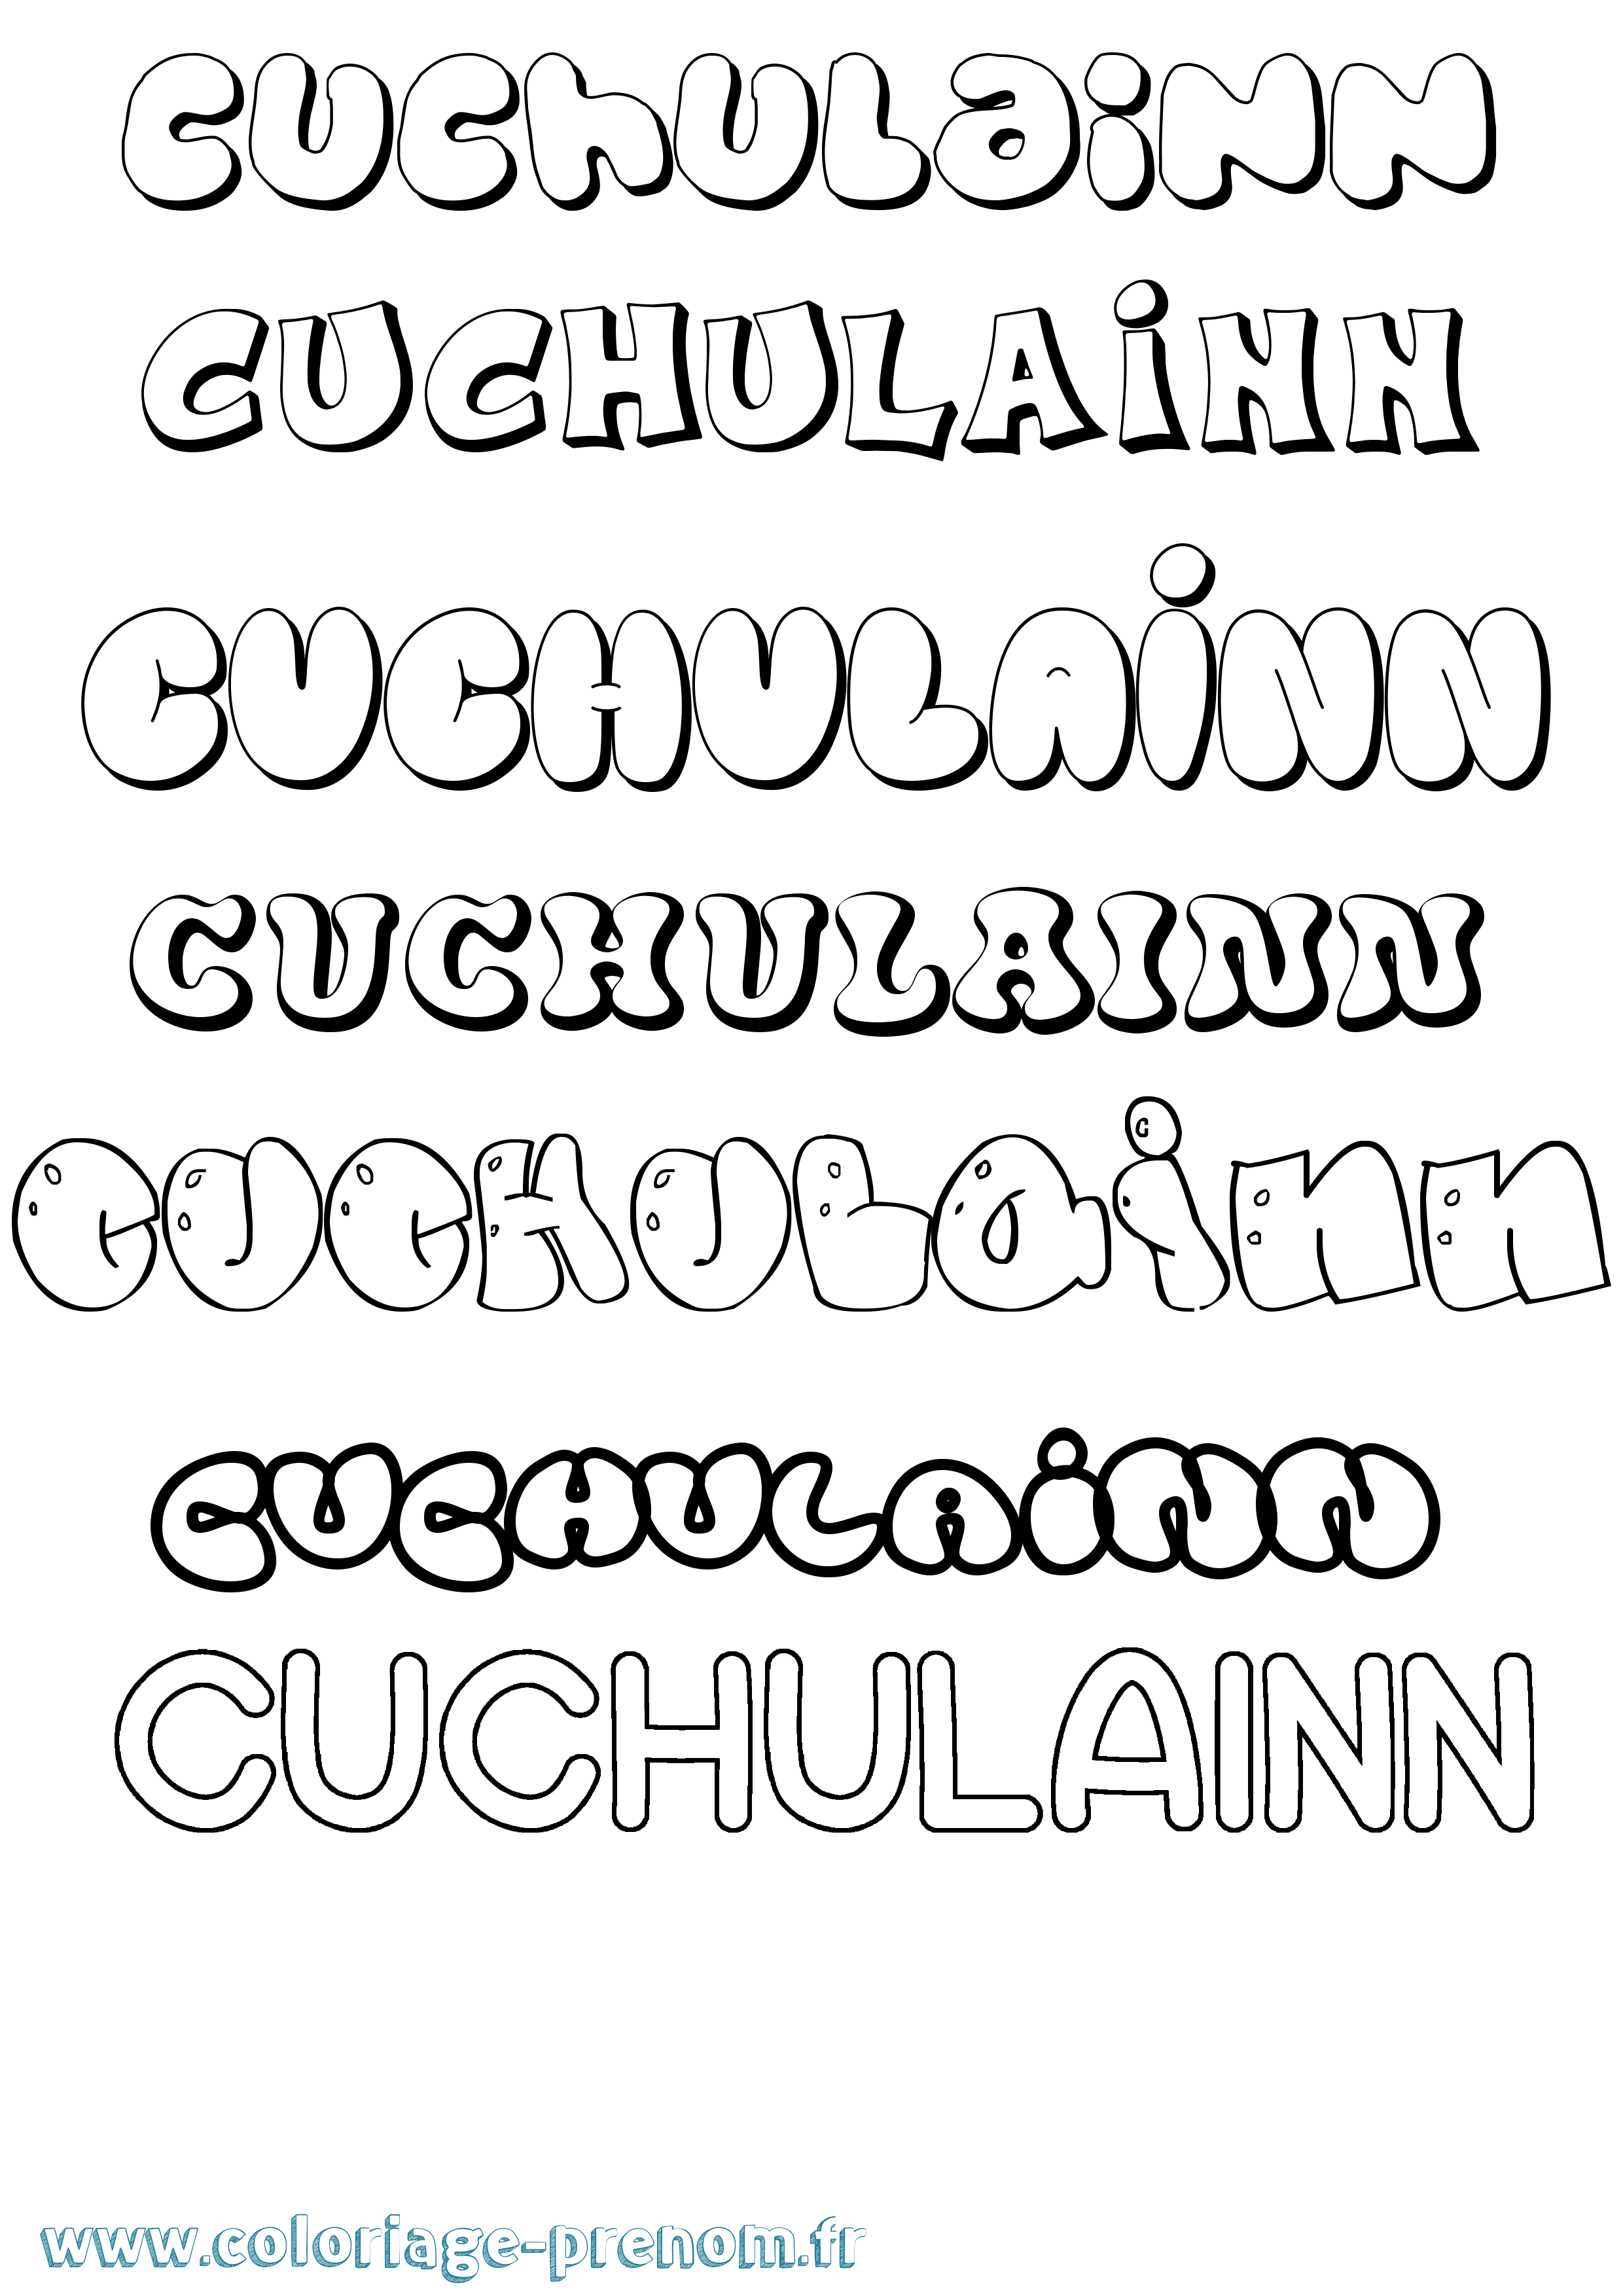 Coloriage prénom Cuchulainn Bubble